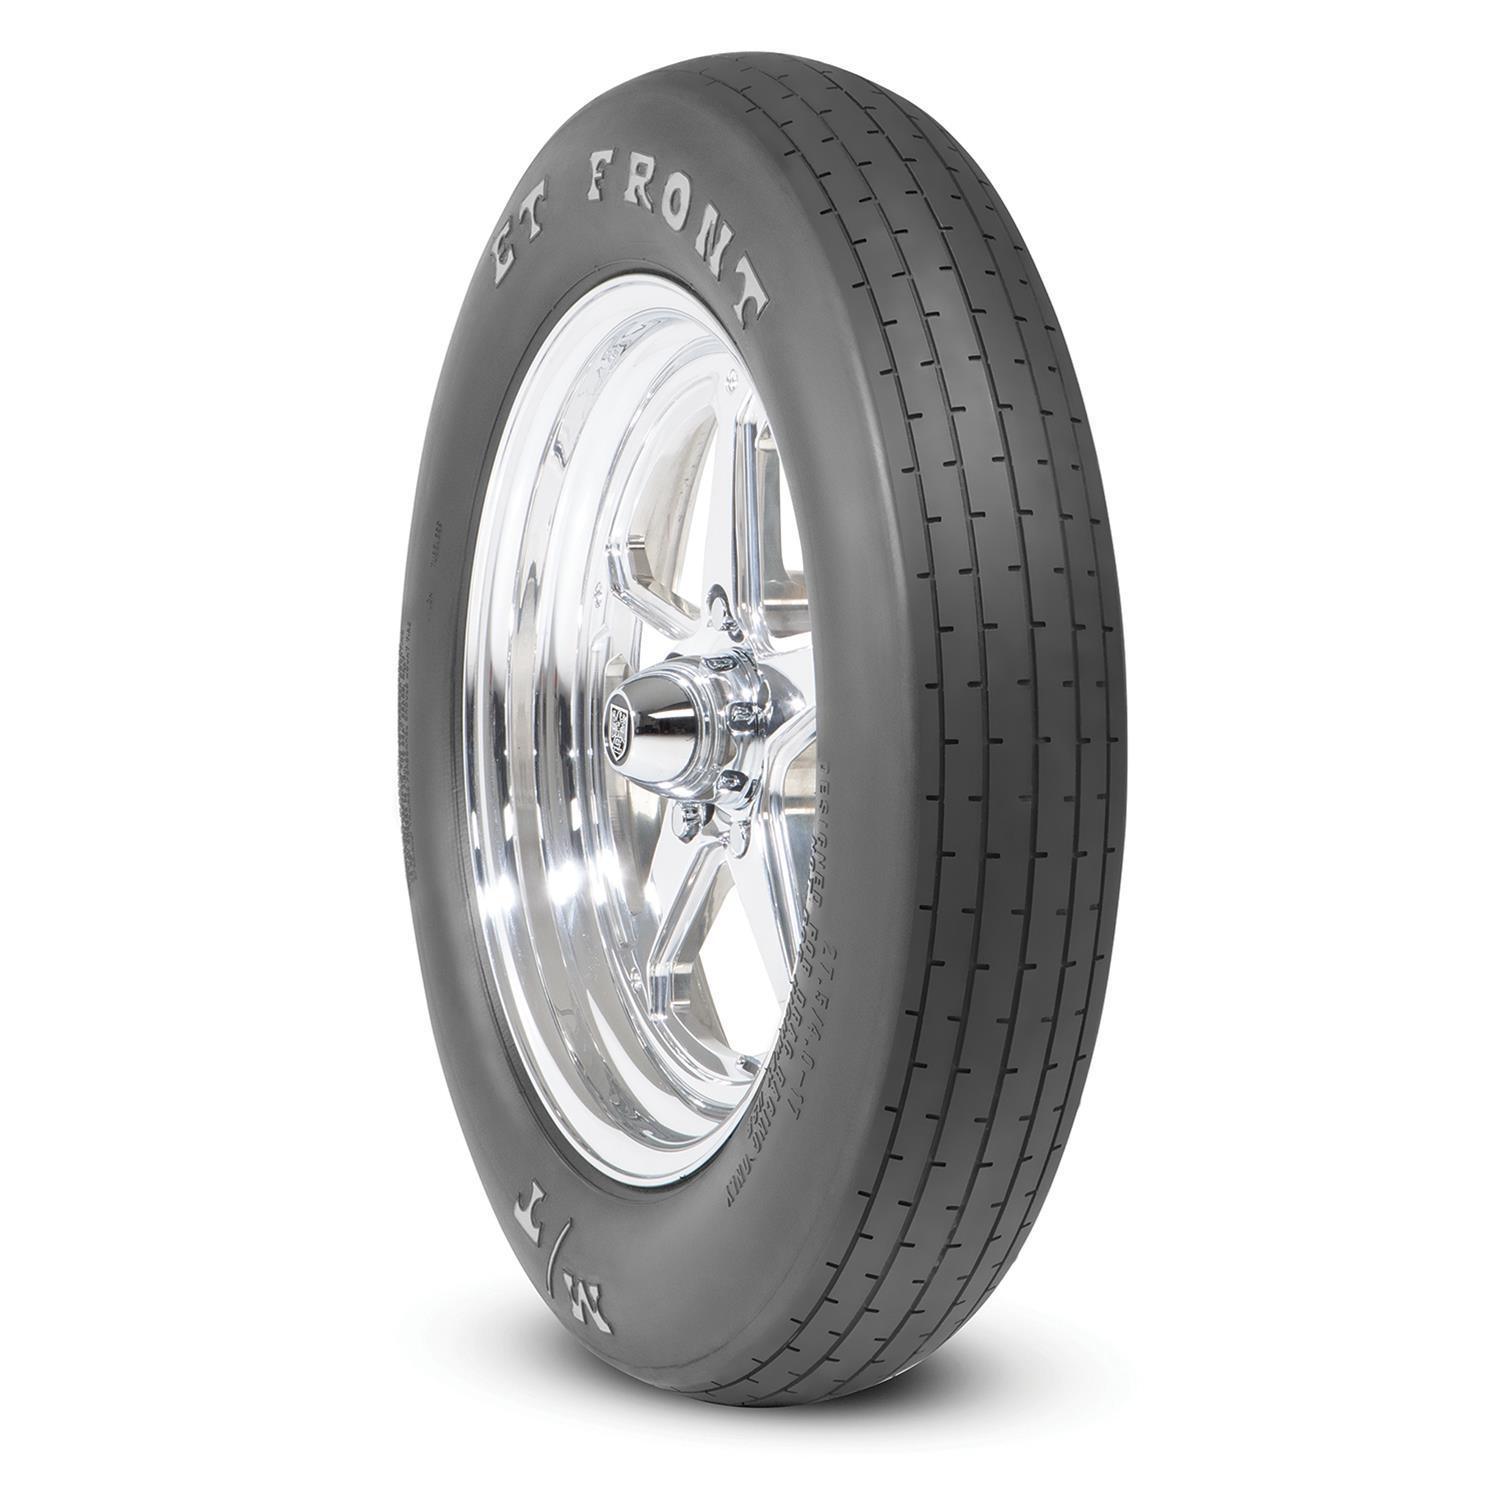 27.5x4-17 ET Drag Front Tire - Burlile Performance Products